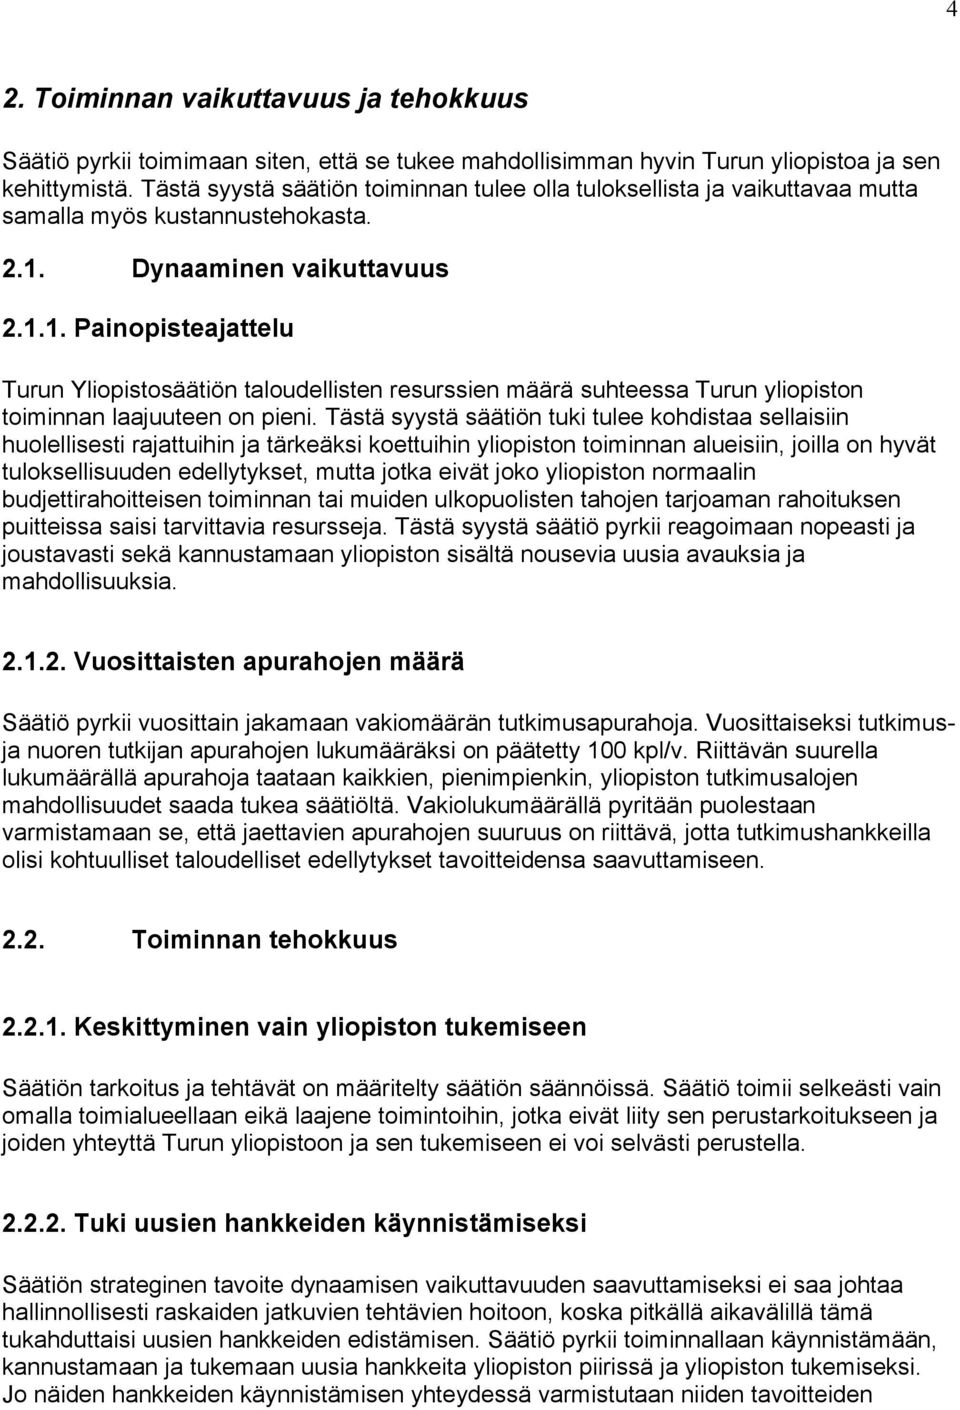 Dynaaminen vaikuttavuus 2.1.1. Painopisteajattelu Turun Yliopistosäätiön taloudellisten resurssien määrä suhteessa Turun yliopiston toiminnan laajuuteen on pieni.